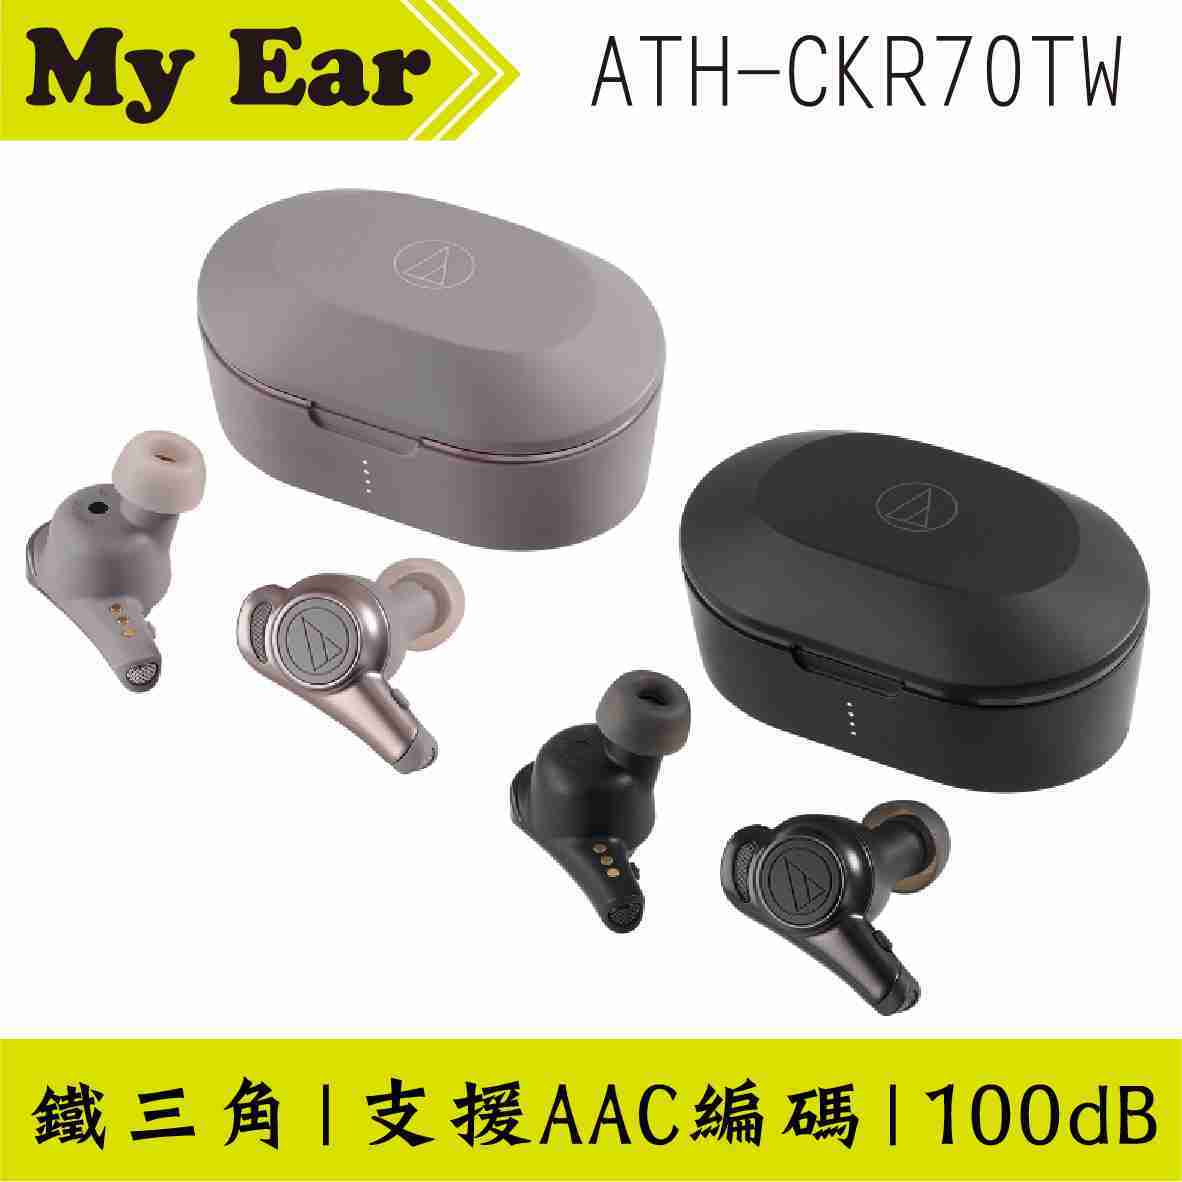 鐵三角 ATH-CKR70TW 米色 可單耳使用 真無線 藍芽 耳機 | My Ear 耳機專門店